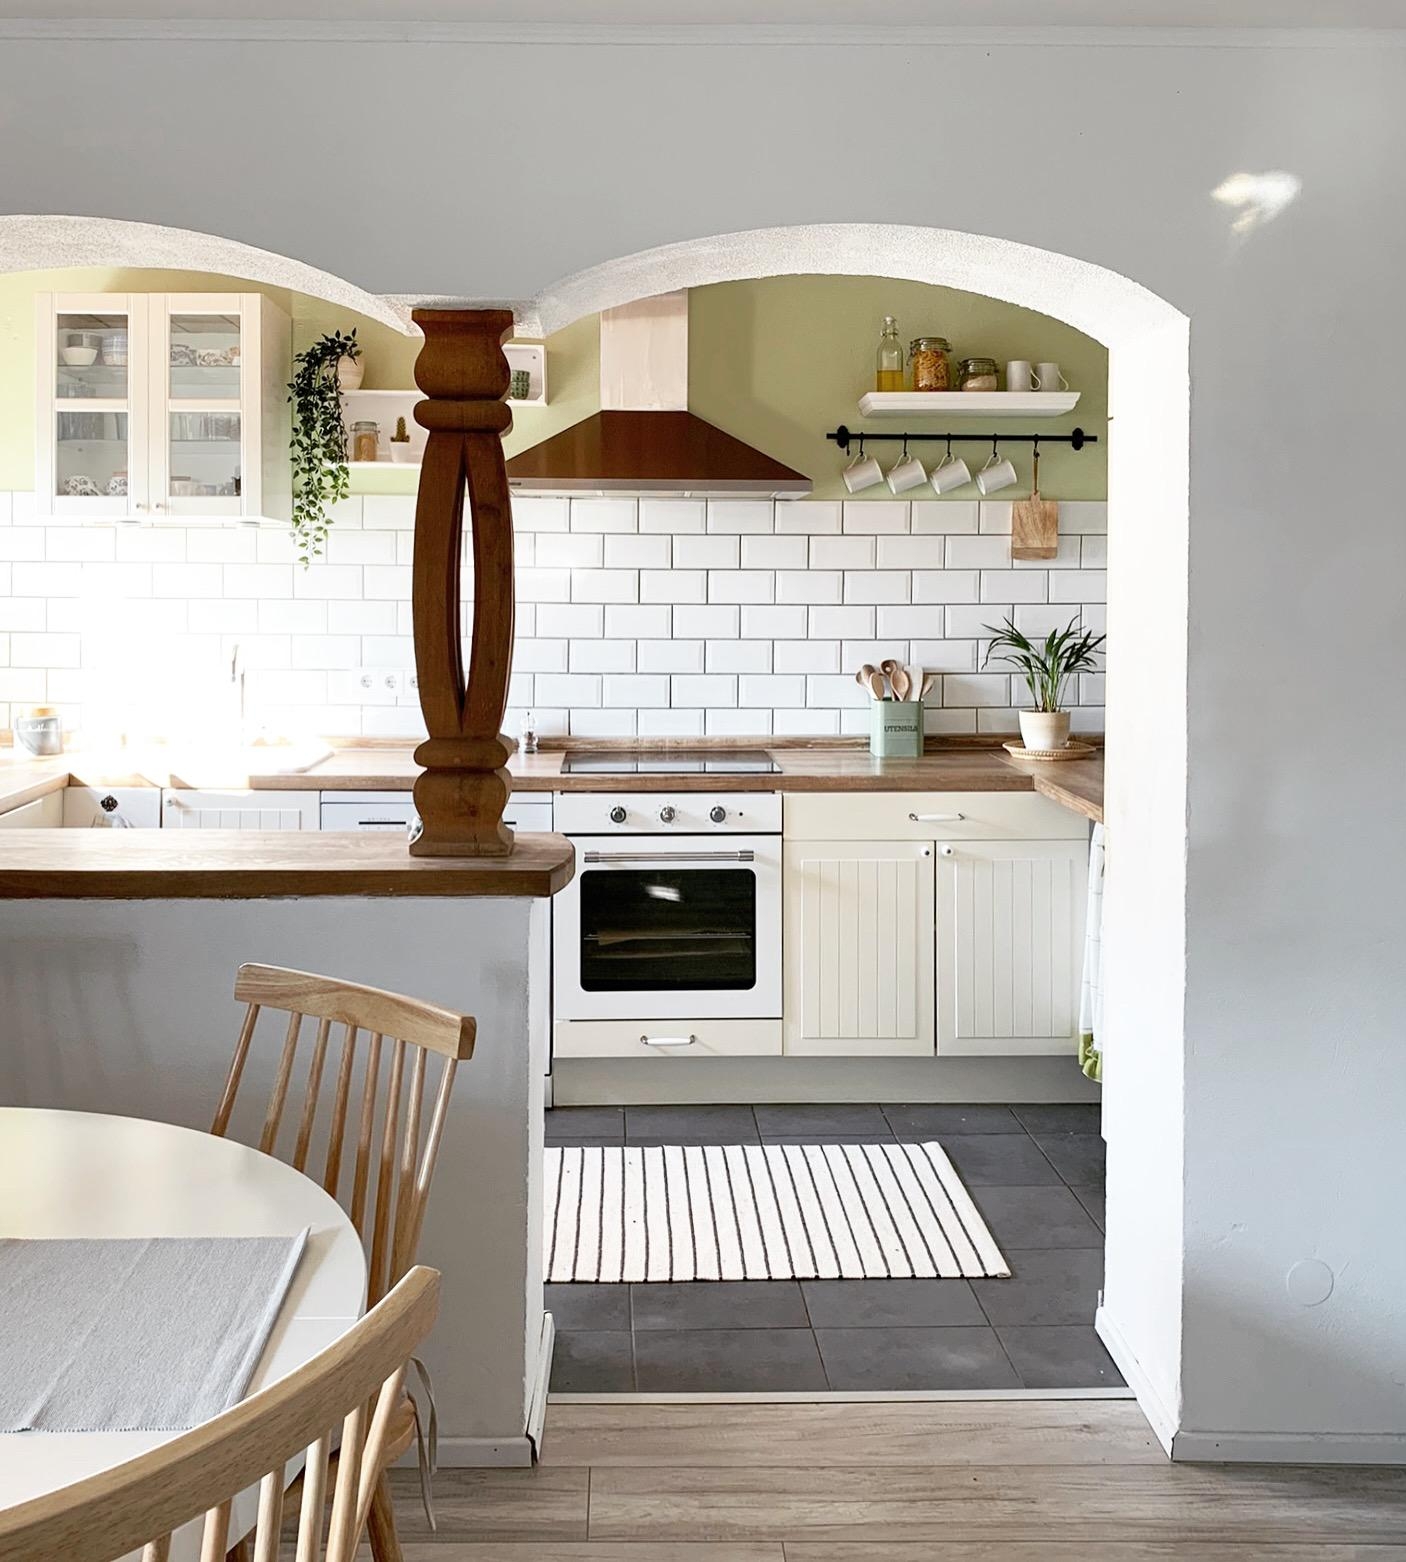 Unsere kleine Küche
#küche #skandistyle #sonne #holzliebe #zimmerpflanzen #metrofliesen #wohnküche